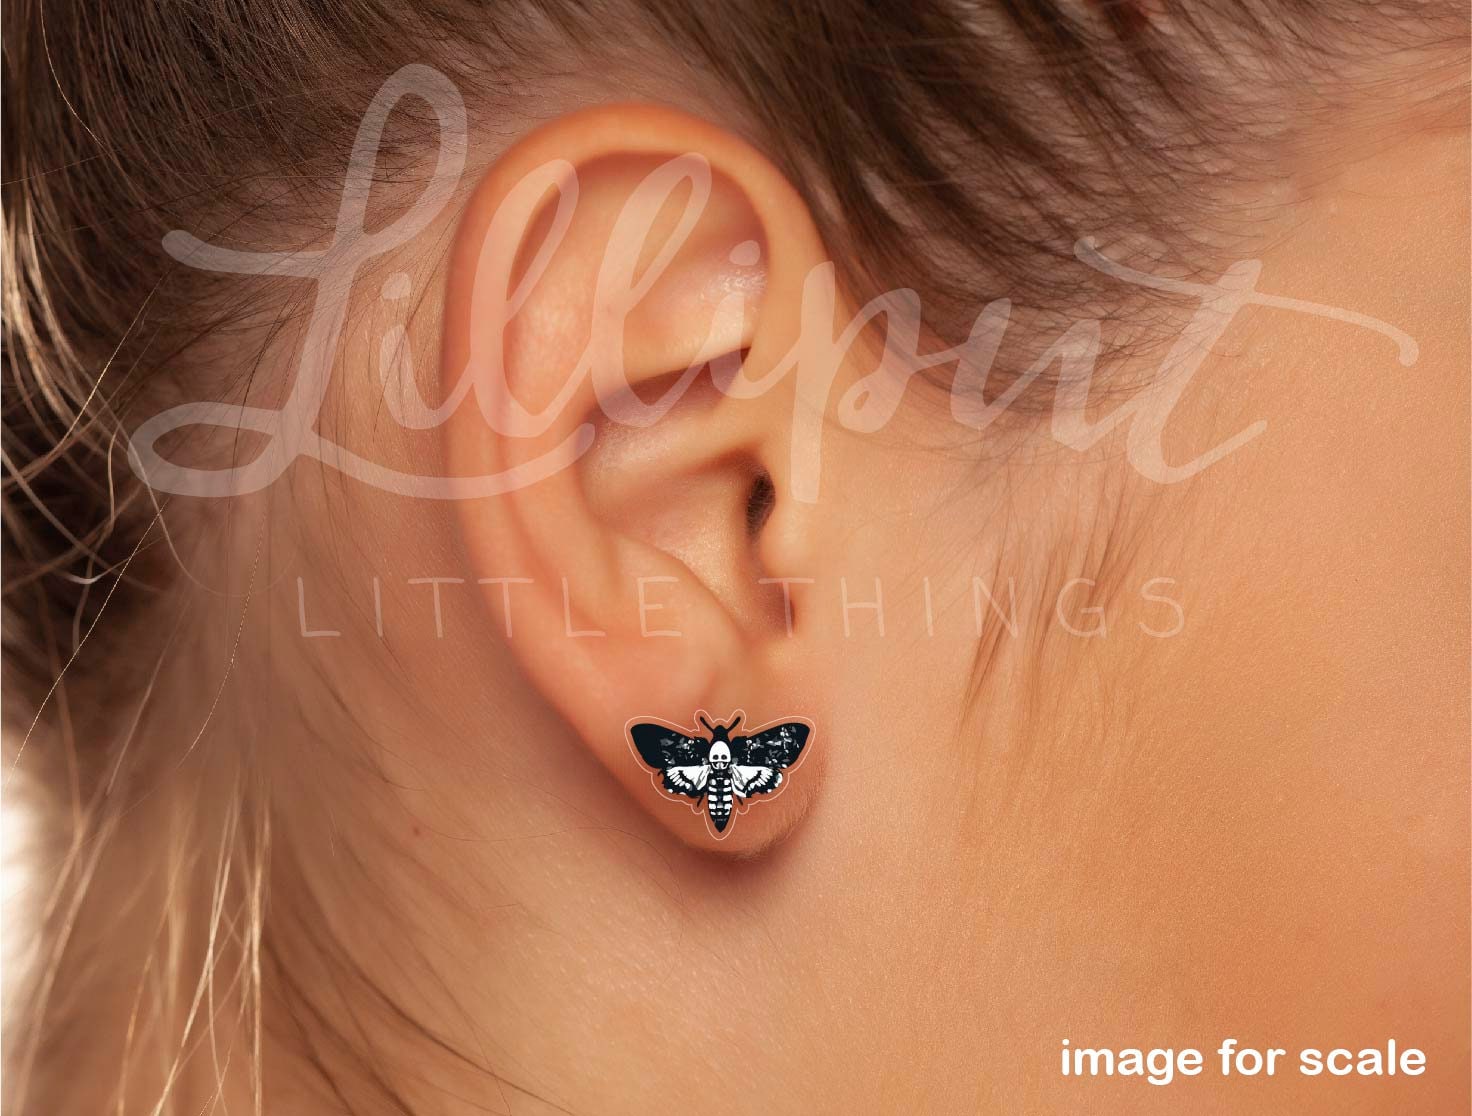 Death Head Moth Earrings // Deaths head Moth Earrings // Skull Moth Earrings // Witchy Earrings // Witchy Jewelry // Halloween Earrings